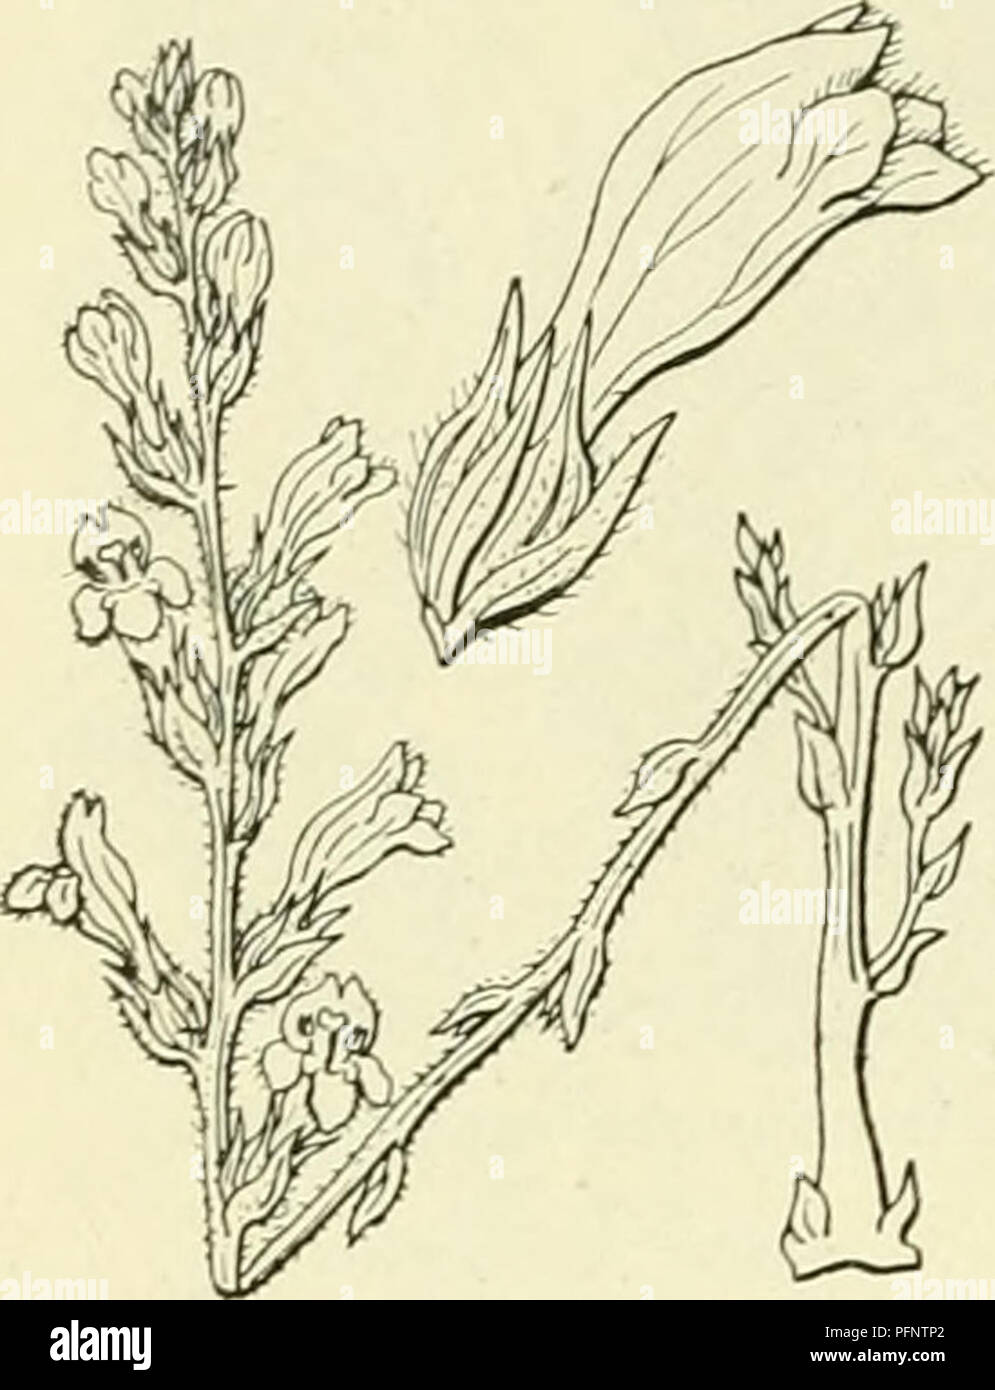 . De flora van Nederland. Plants. 268 — QLOBULARIACEAE. — FAMILIE 98.. Orobanche ramosa Fig. 333. 0. ramósa ') L. (Phelipaéa ramósa C. A. Meijer). Hennepvreter (fig. 333). Deze plant is klierachtig dicht behaard. De stengel is dun, rond, geel- achtig of iets blauwachtig, meest vertakt, aan den voet weinig verdikt. De schubben zijn weinig talrijk en klein (1 cM lang), lancetvormig, donkerbruin. De bloemen zitten in veelbloemige, losse, ten slotte verlengde aren. Het buitenste schutblad (fig.. 333) is grooter, eirond-lancetvormig, de andere zijn lijnvormig. De bloemen zijn 10-15 mM en later 17 n Stock Photo